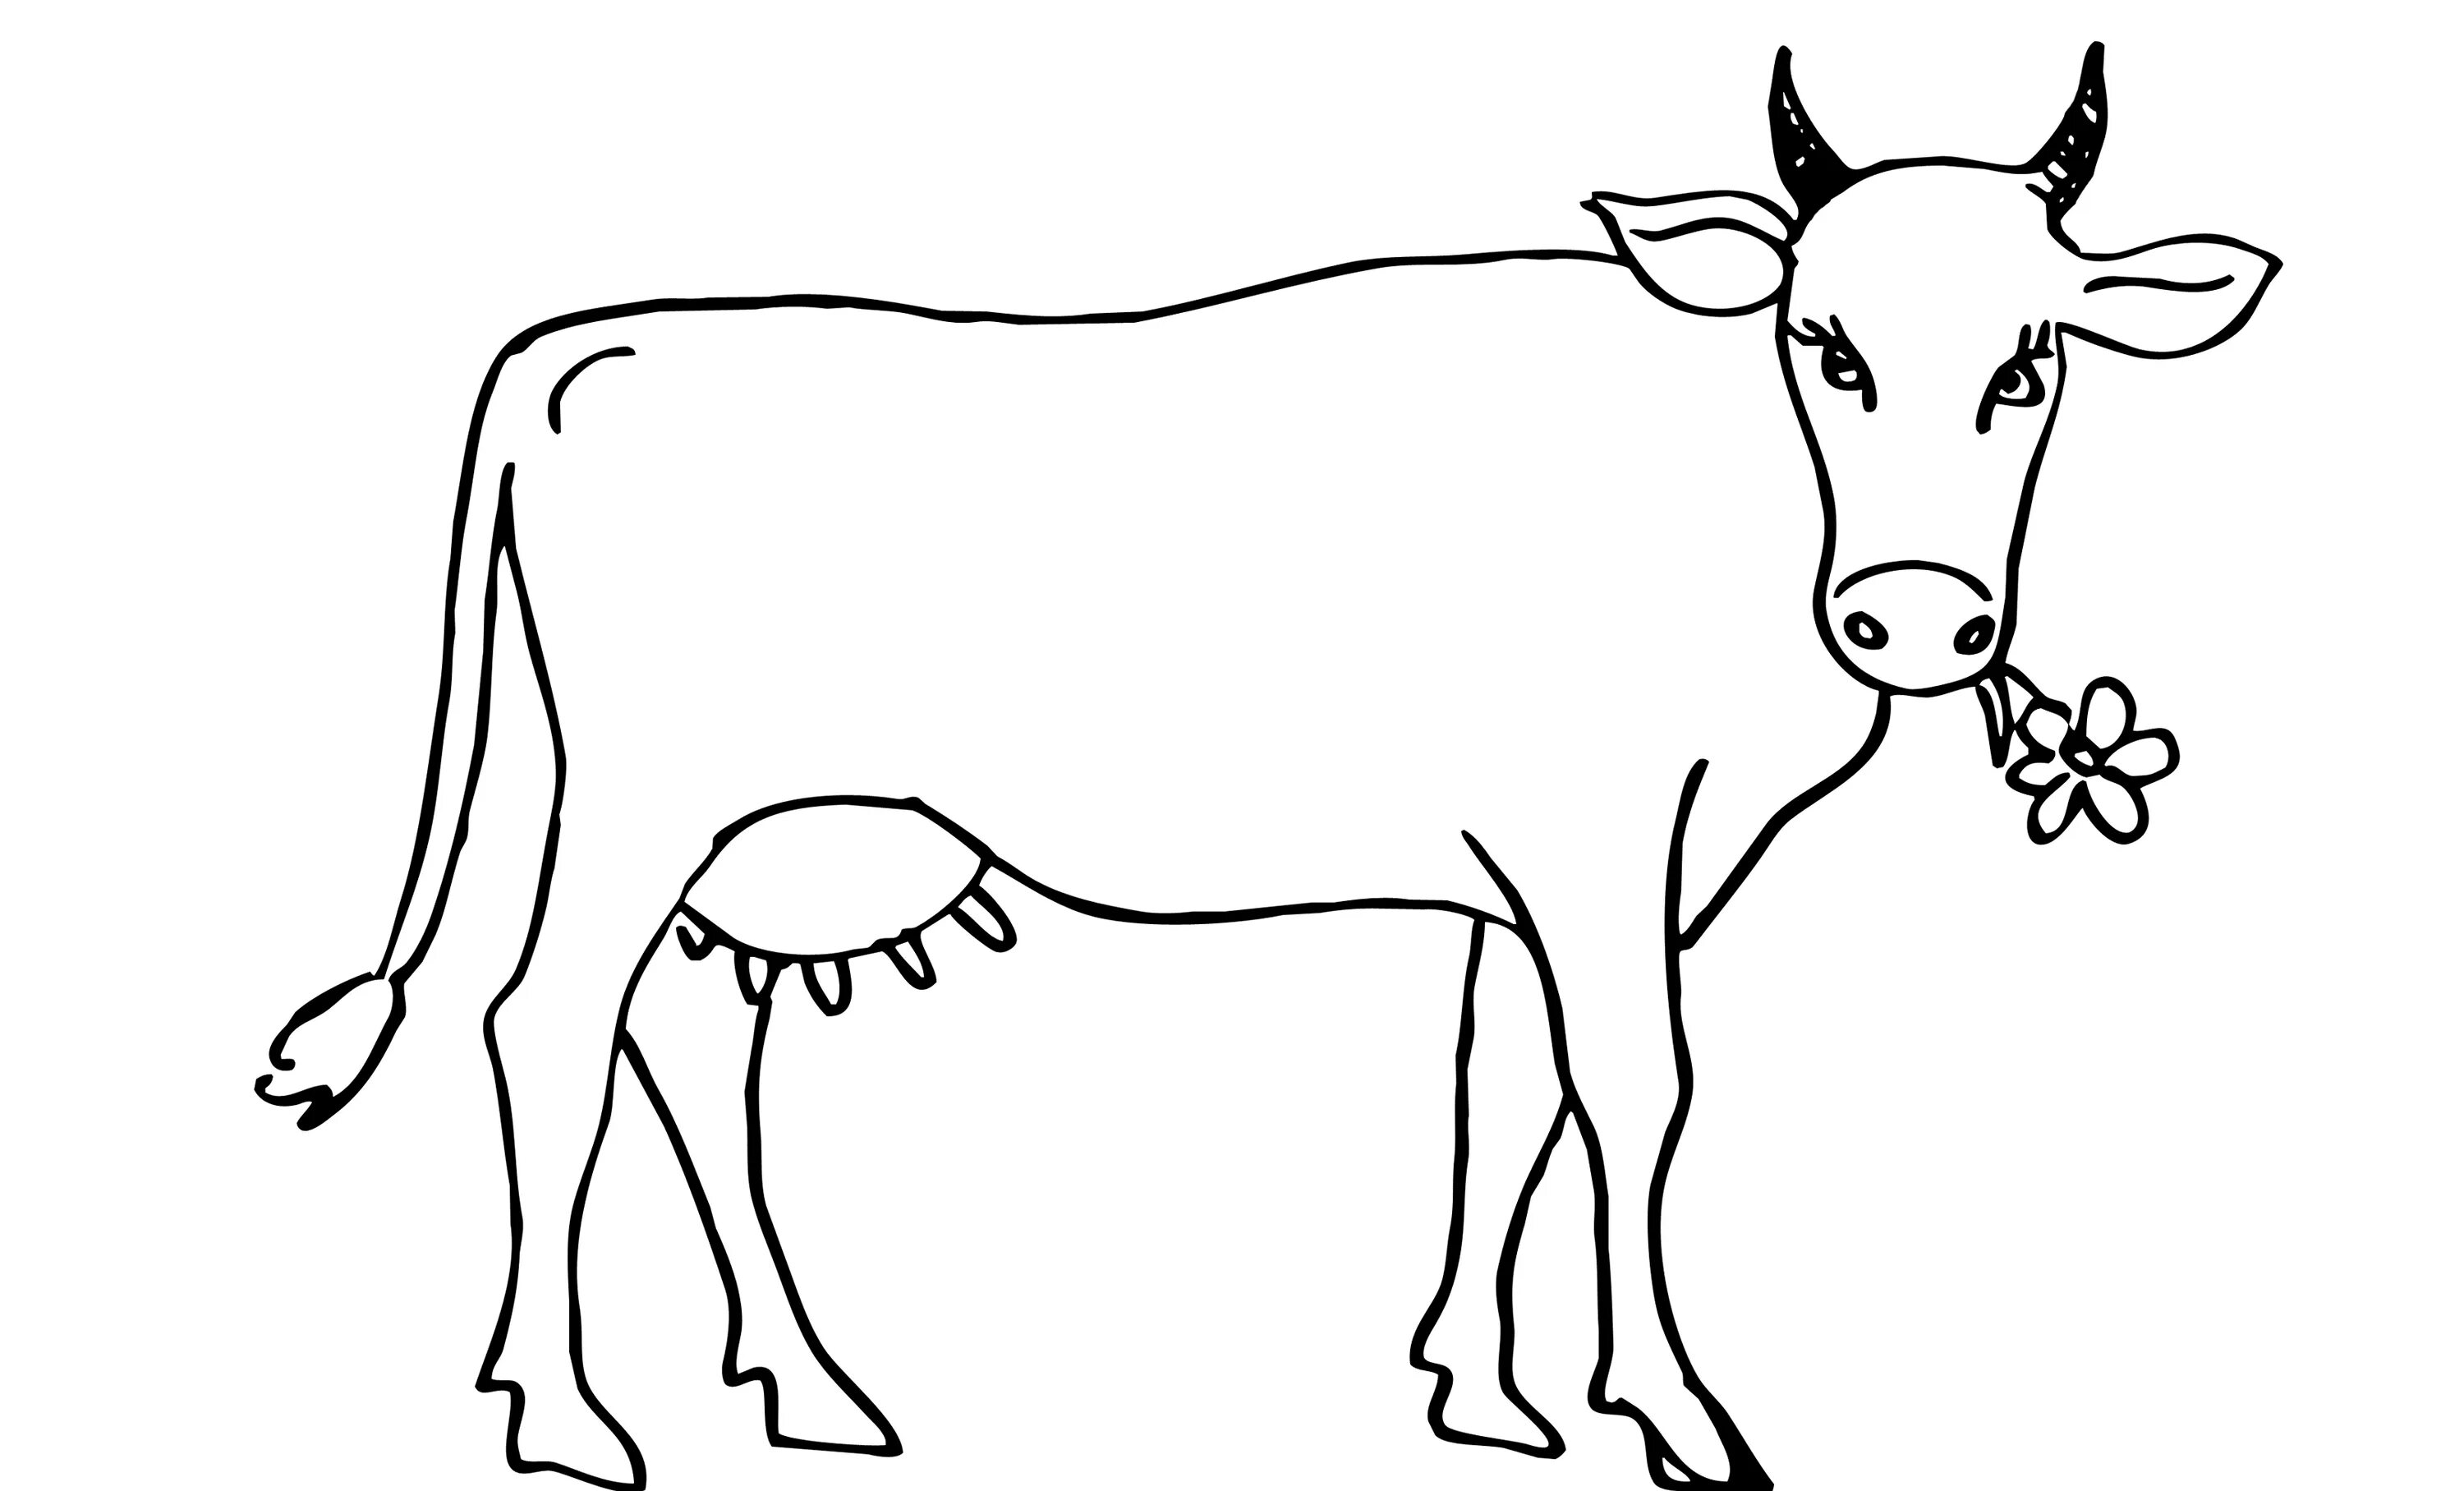 Раскраски для детей 3 года коровы. Корова картинка для детей раскраска. Раскраска корова. Корова раскраска для детей. Картинки для раскрашивания корова.